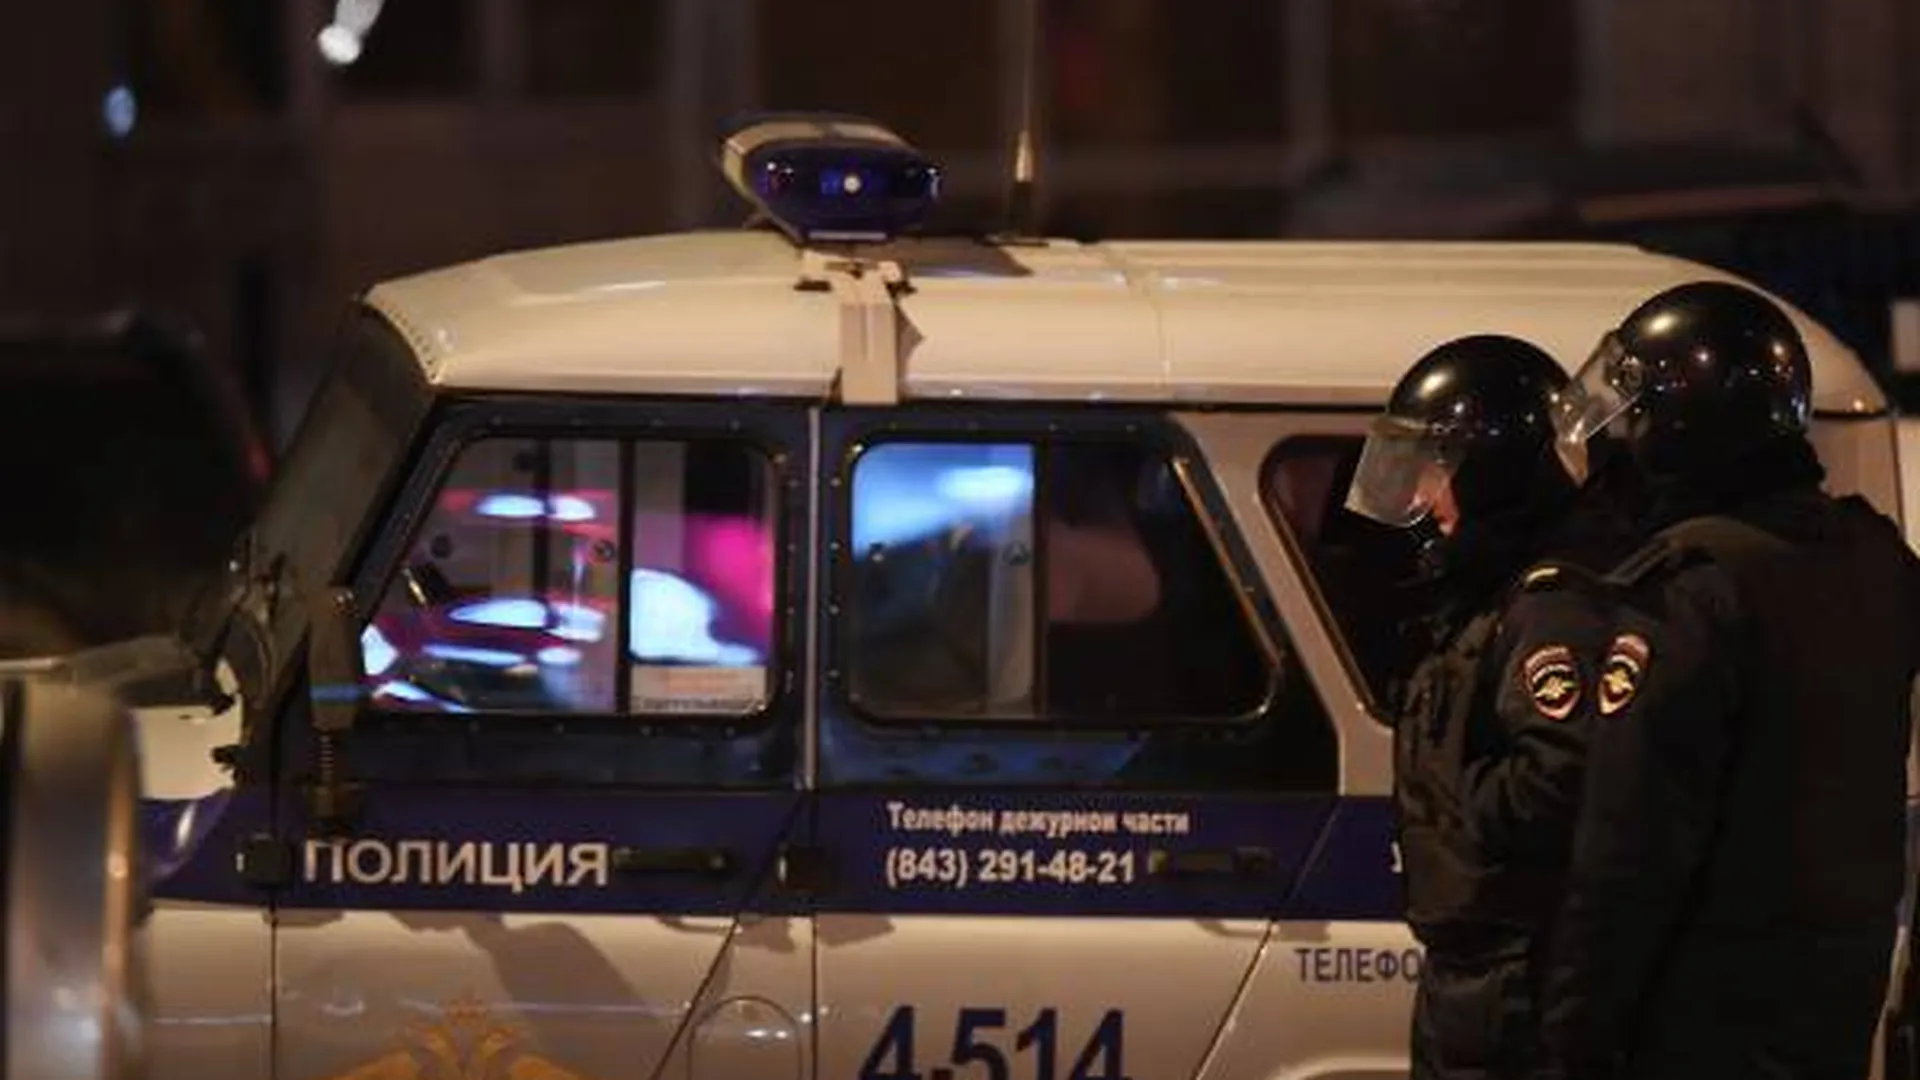 Еще трех человек арестовали в Татарстане по делу о покушении на теракт